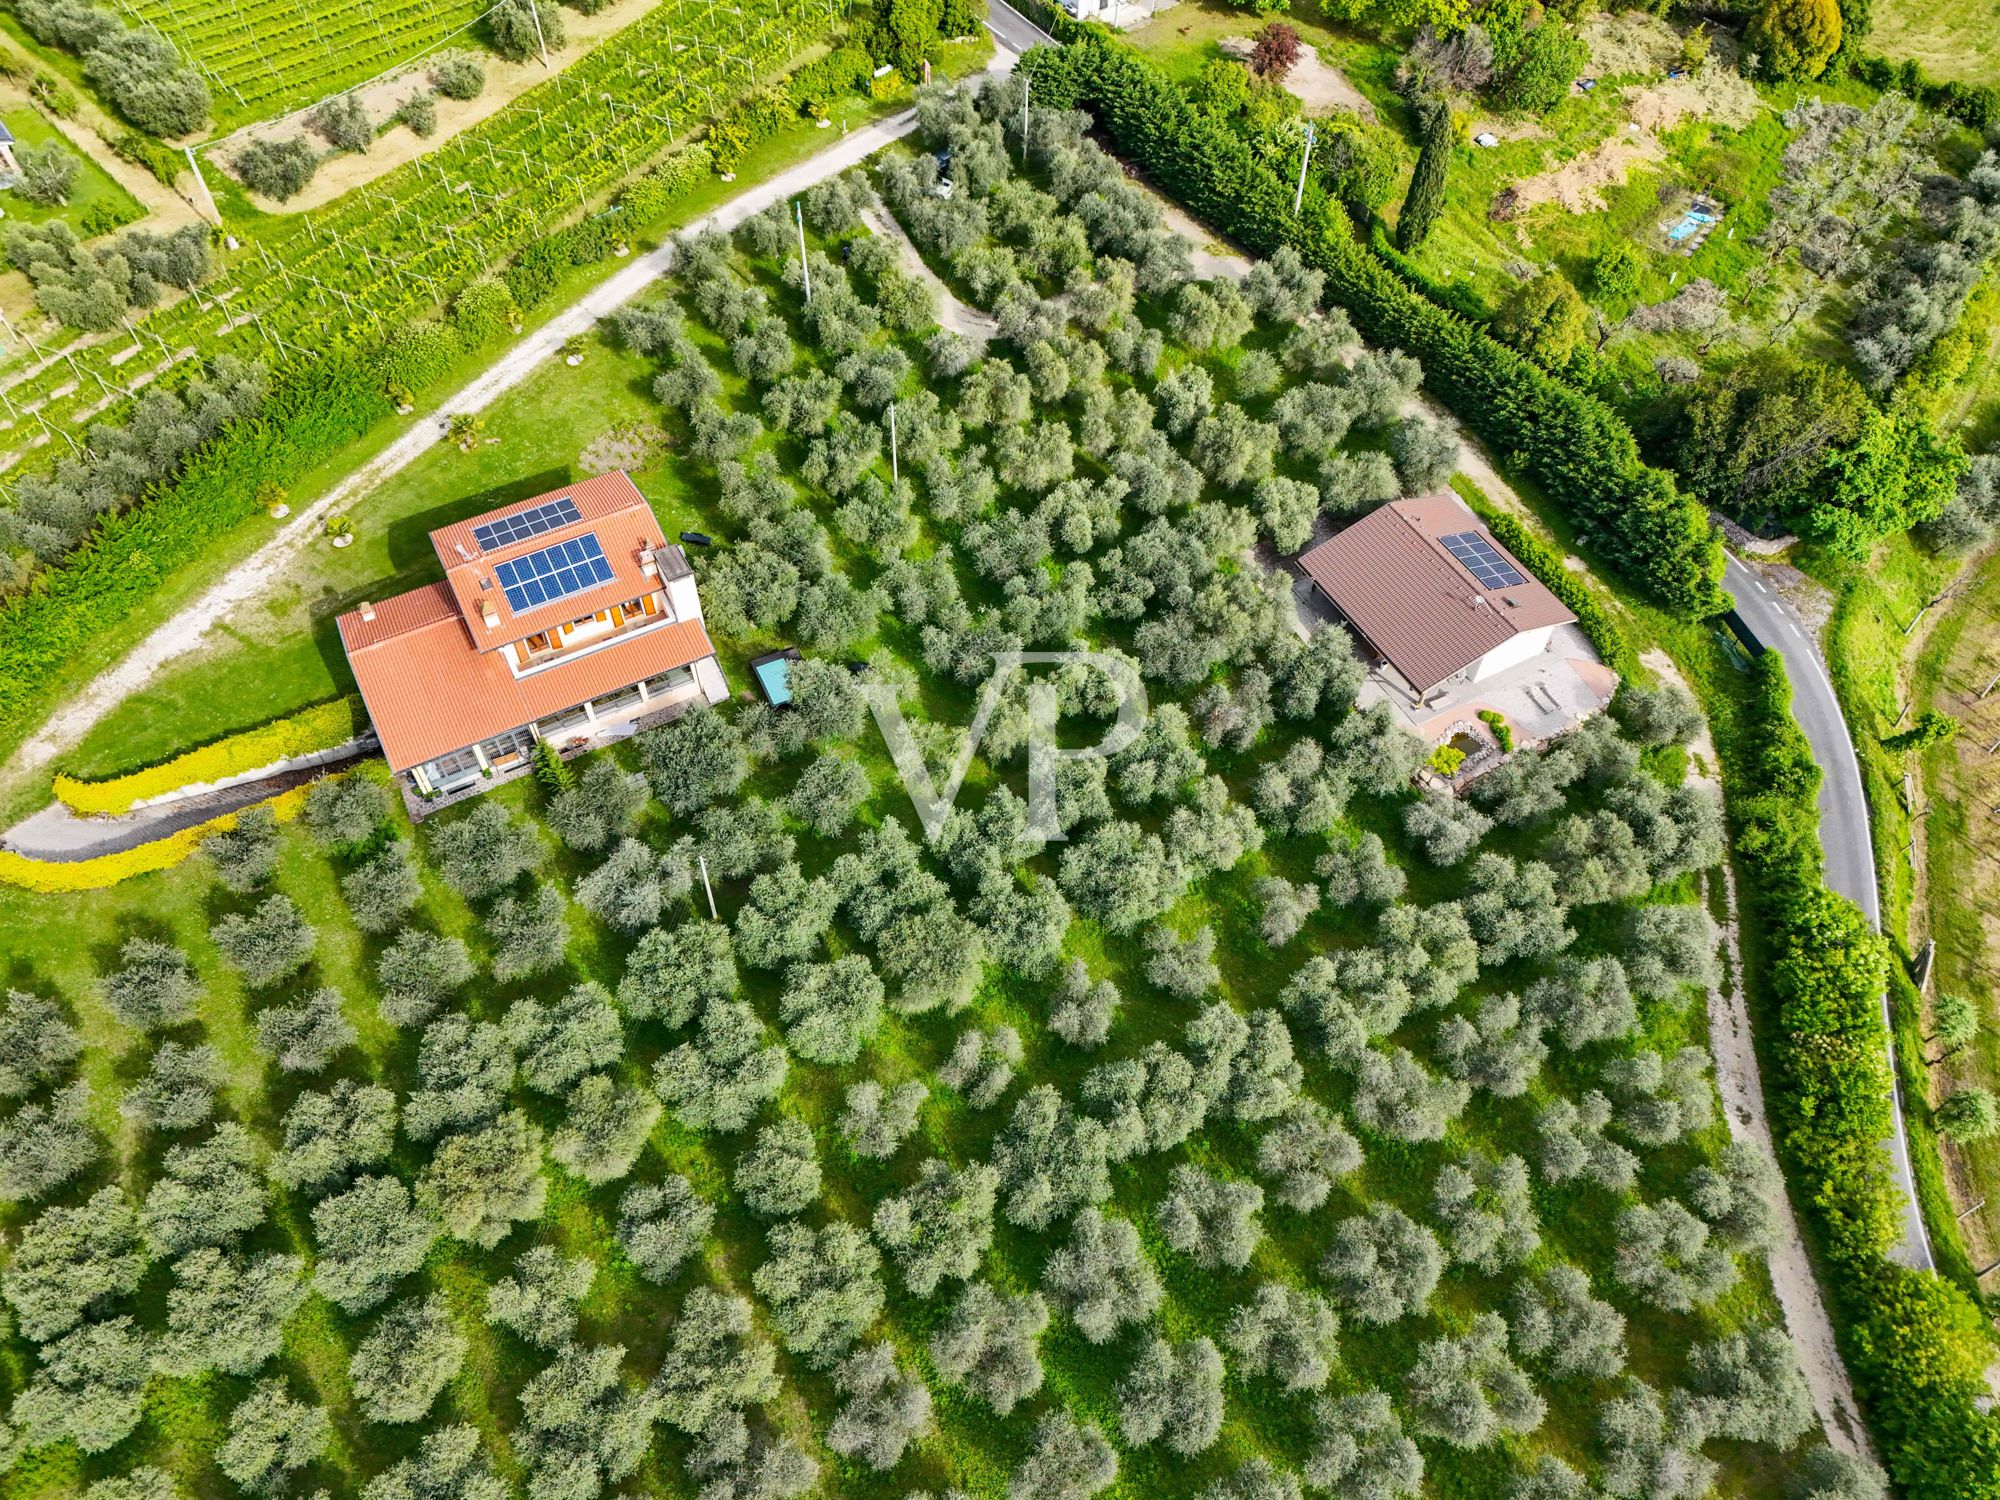 Ferienhaus, Agriturismo, Reitplatz und B&B eingebettet in Olivenhain mit 3 Hektar